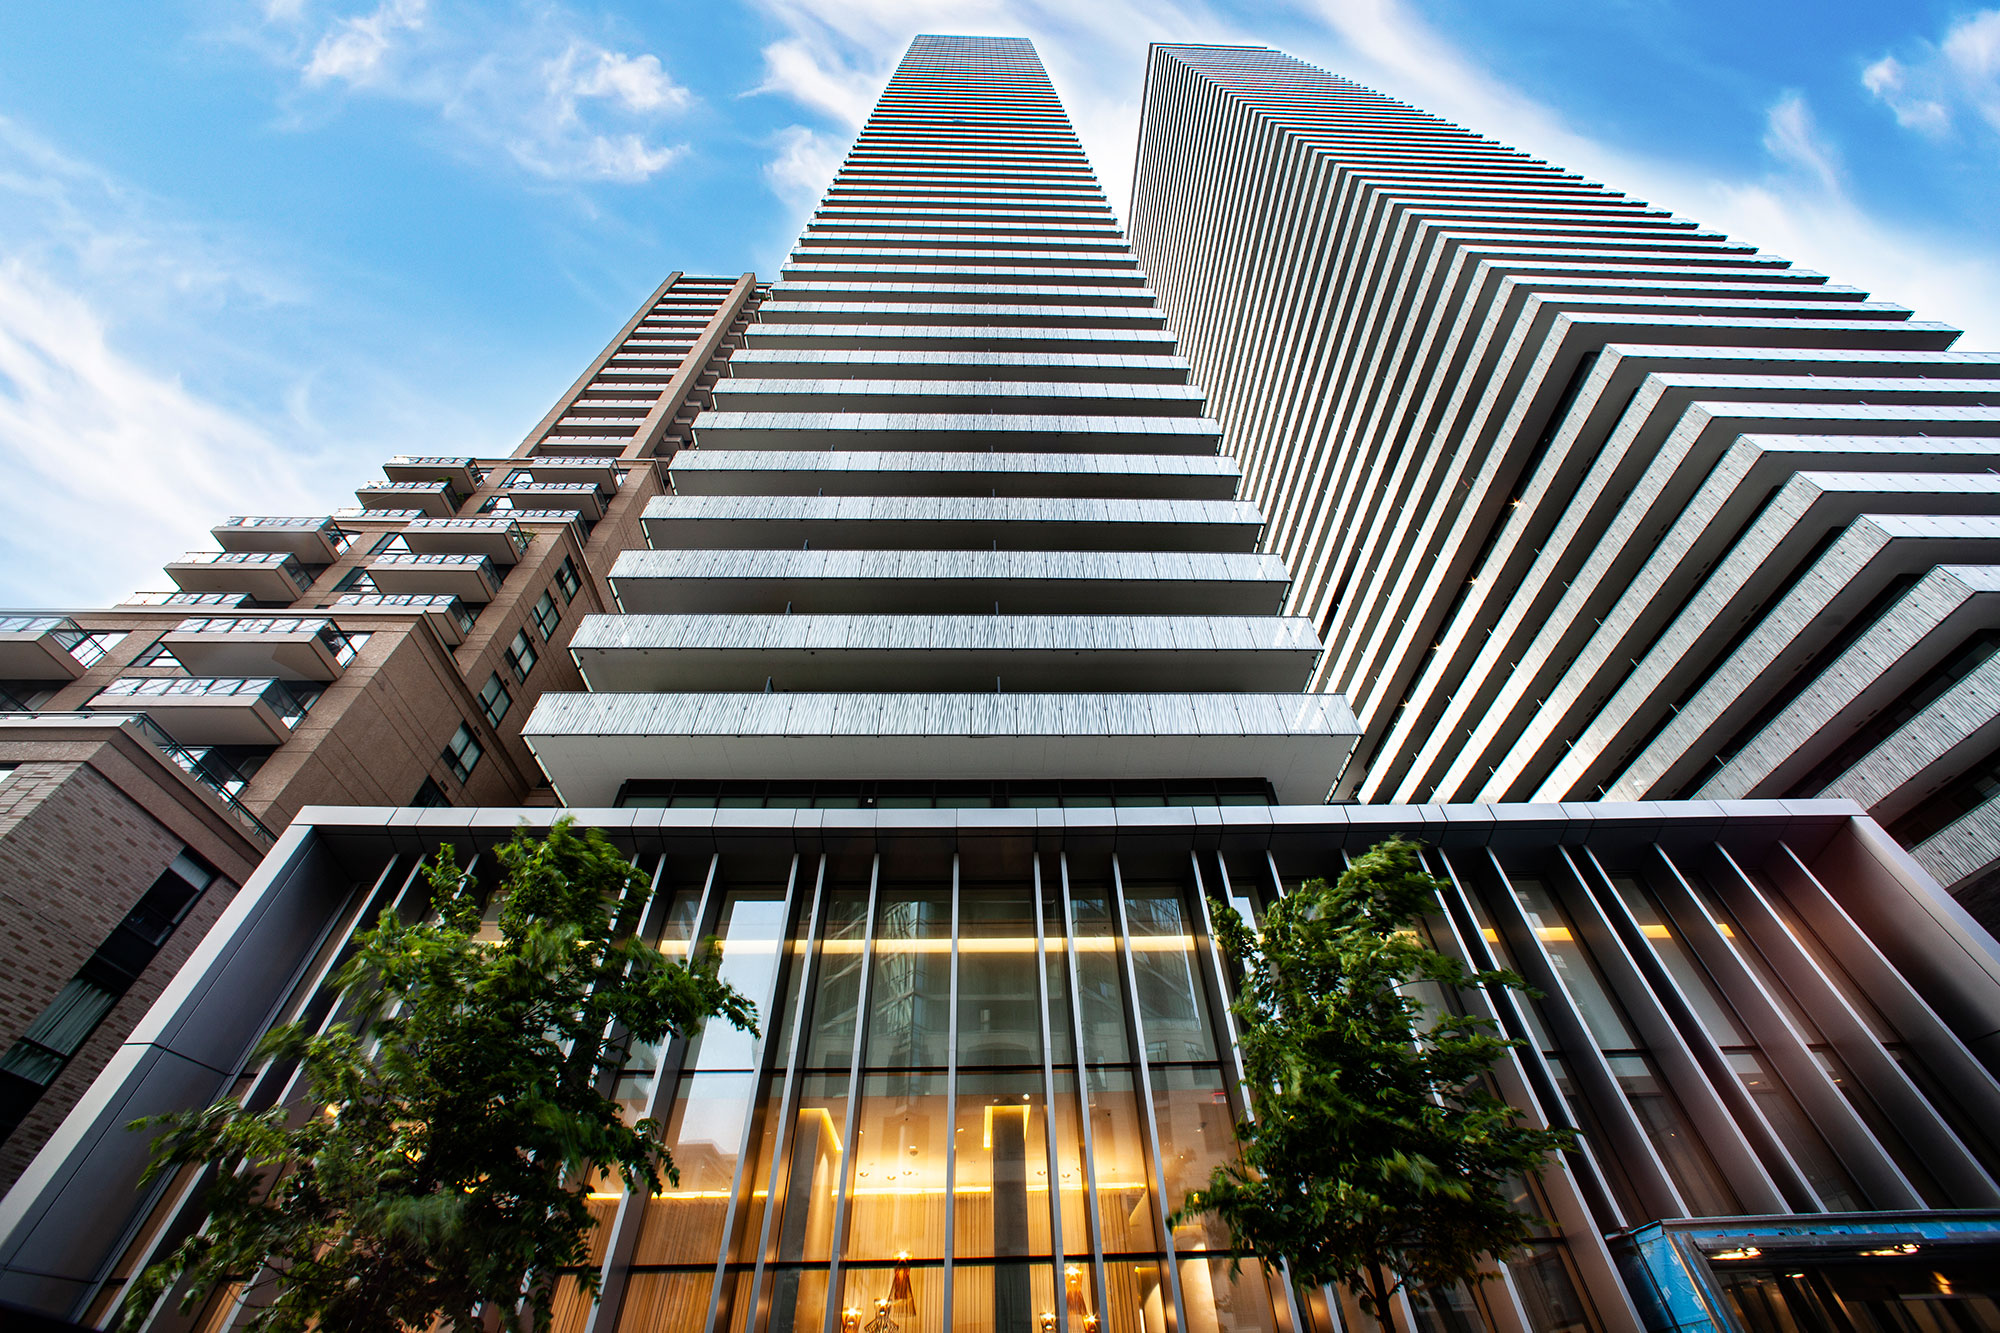 56 storey, 478 suite condominium with 4 levels of underground parking.